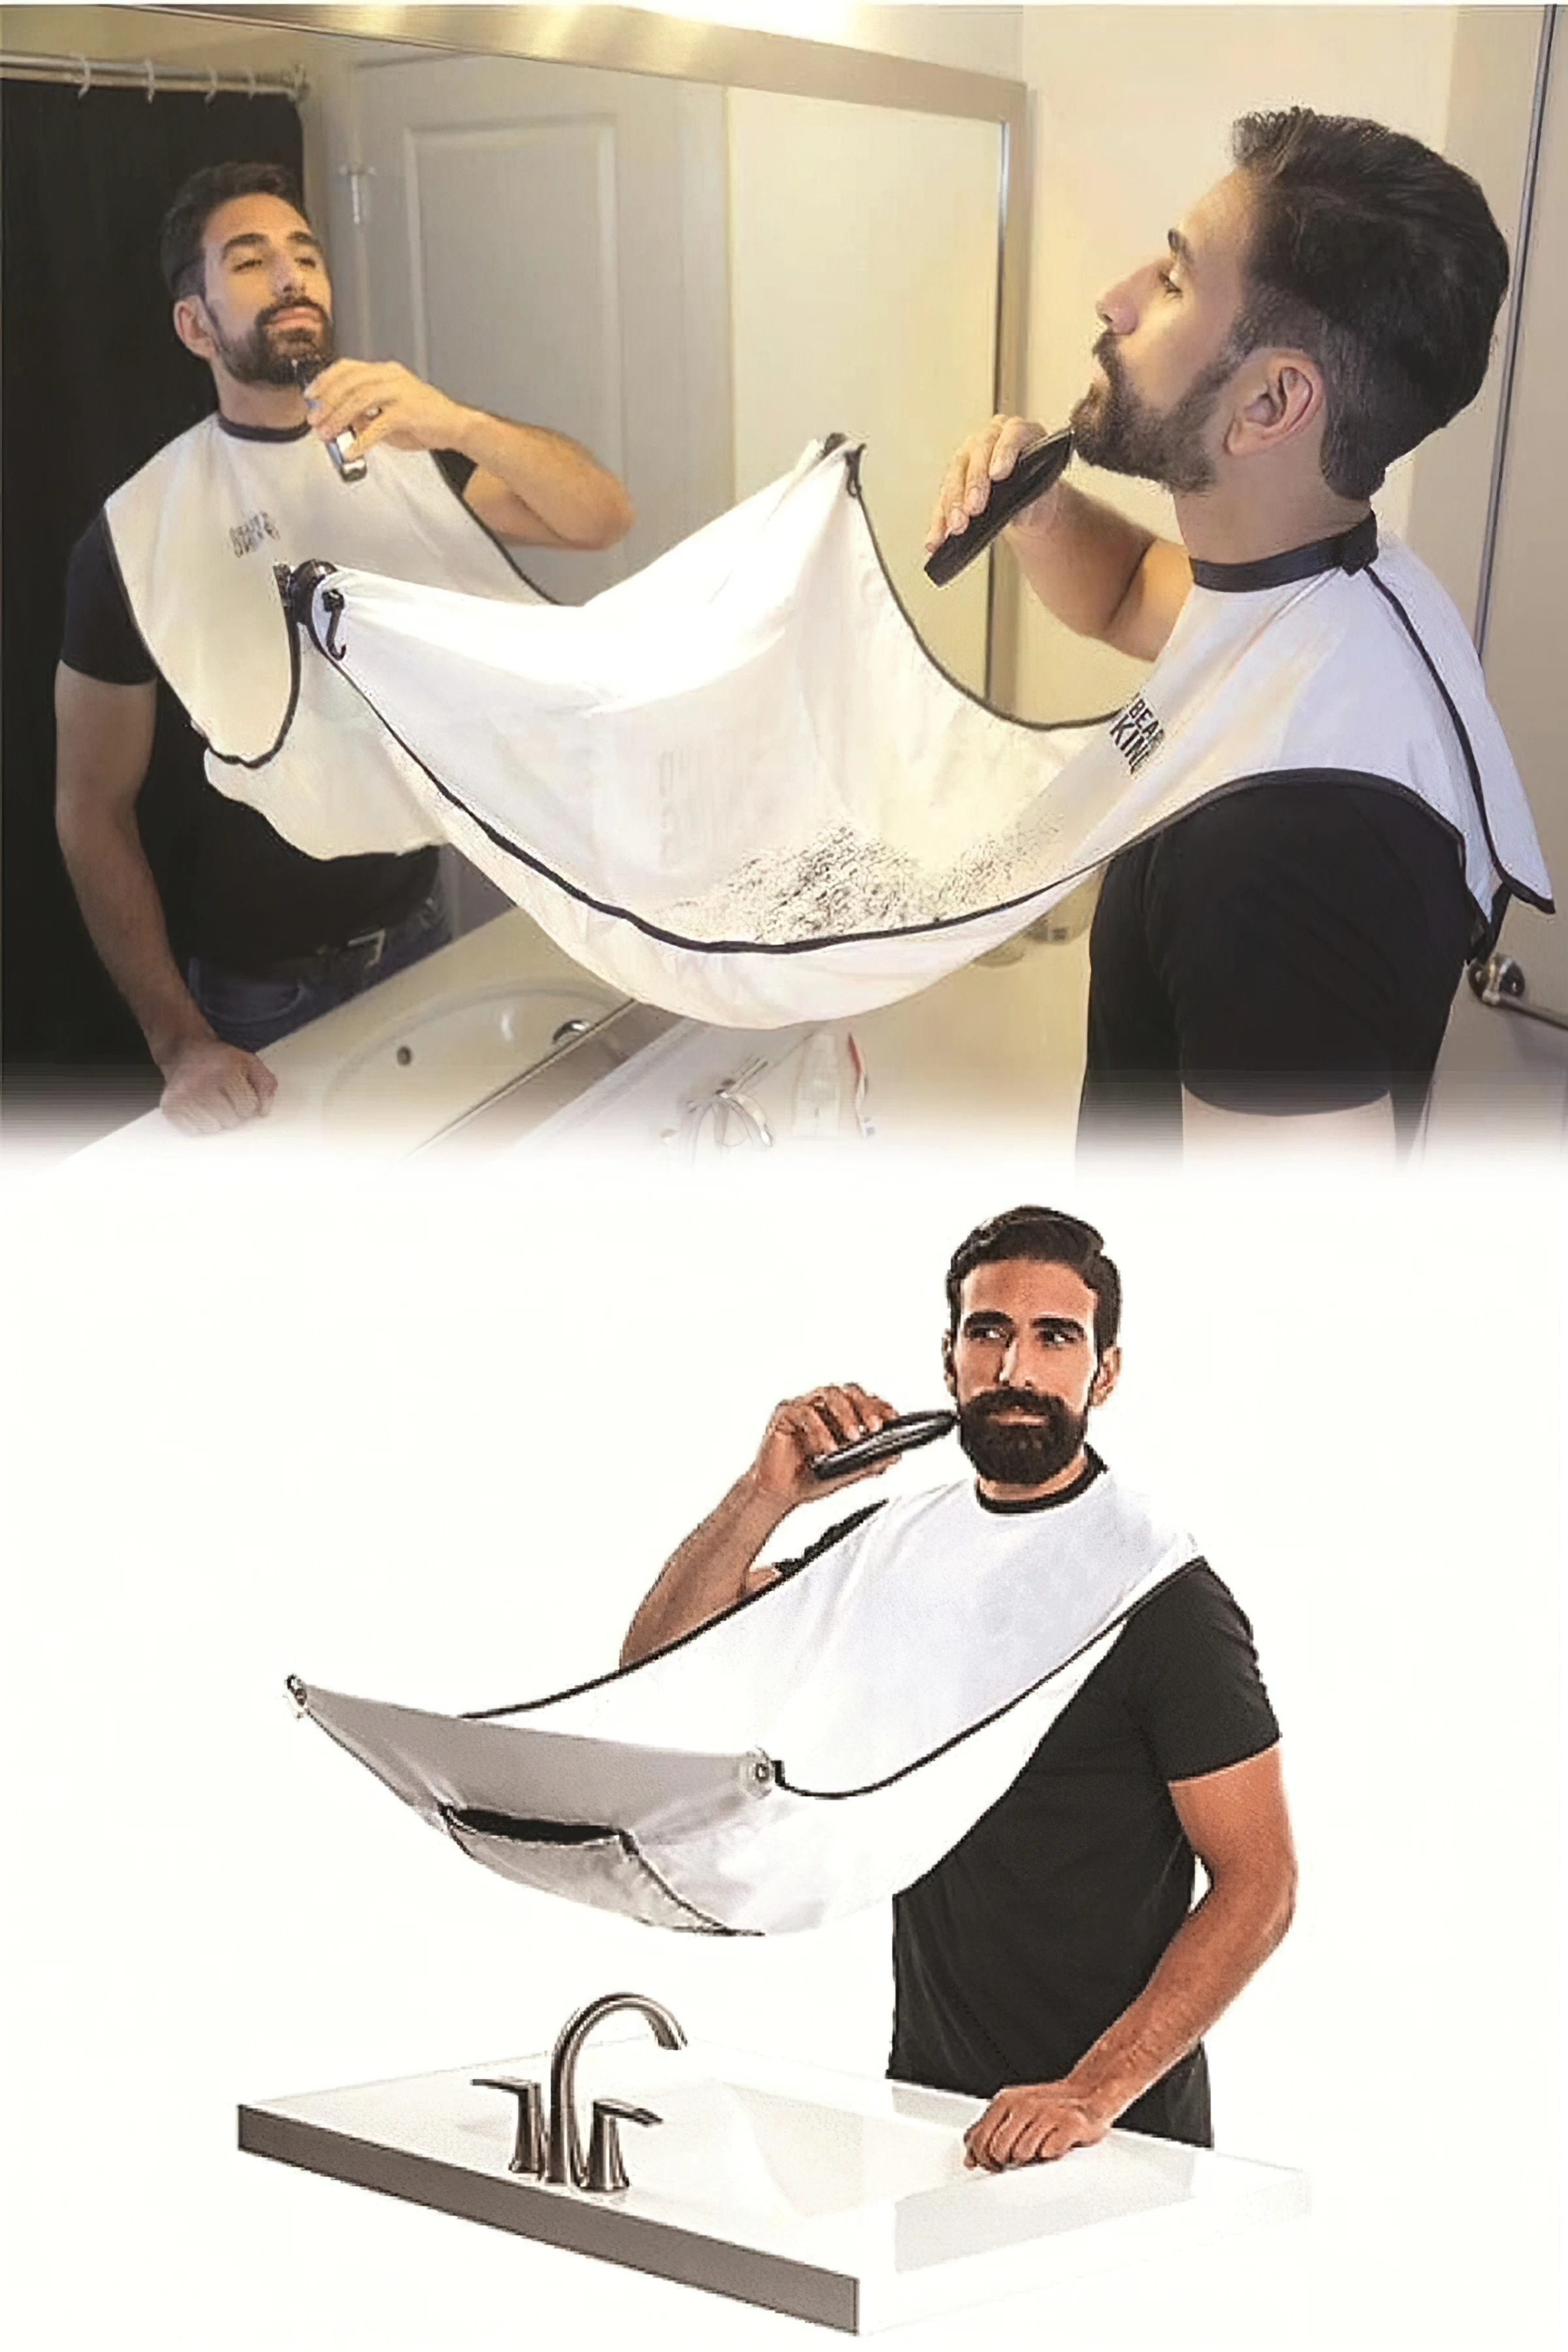 

Pratik Saç Sakal Örtüsü Kolay Kullanım Vantuzlu Saç Sakal Kesimi İçin From Turkey